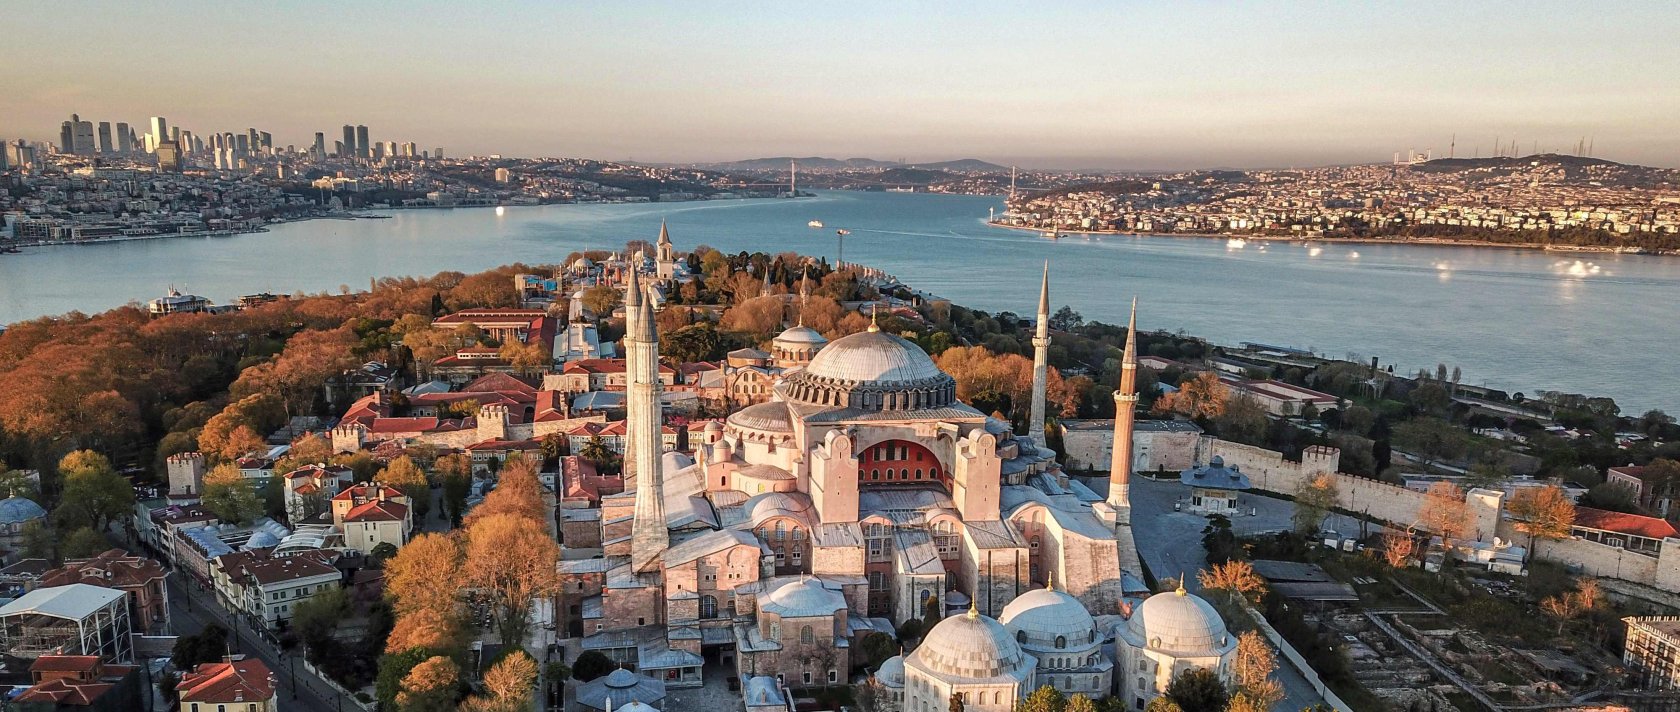 Айя-София Стамбул вид с высоты птичьего полета